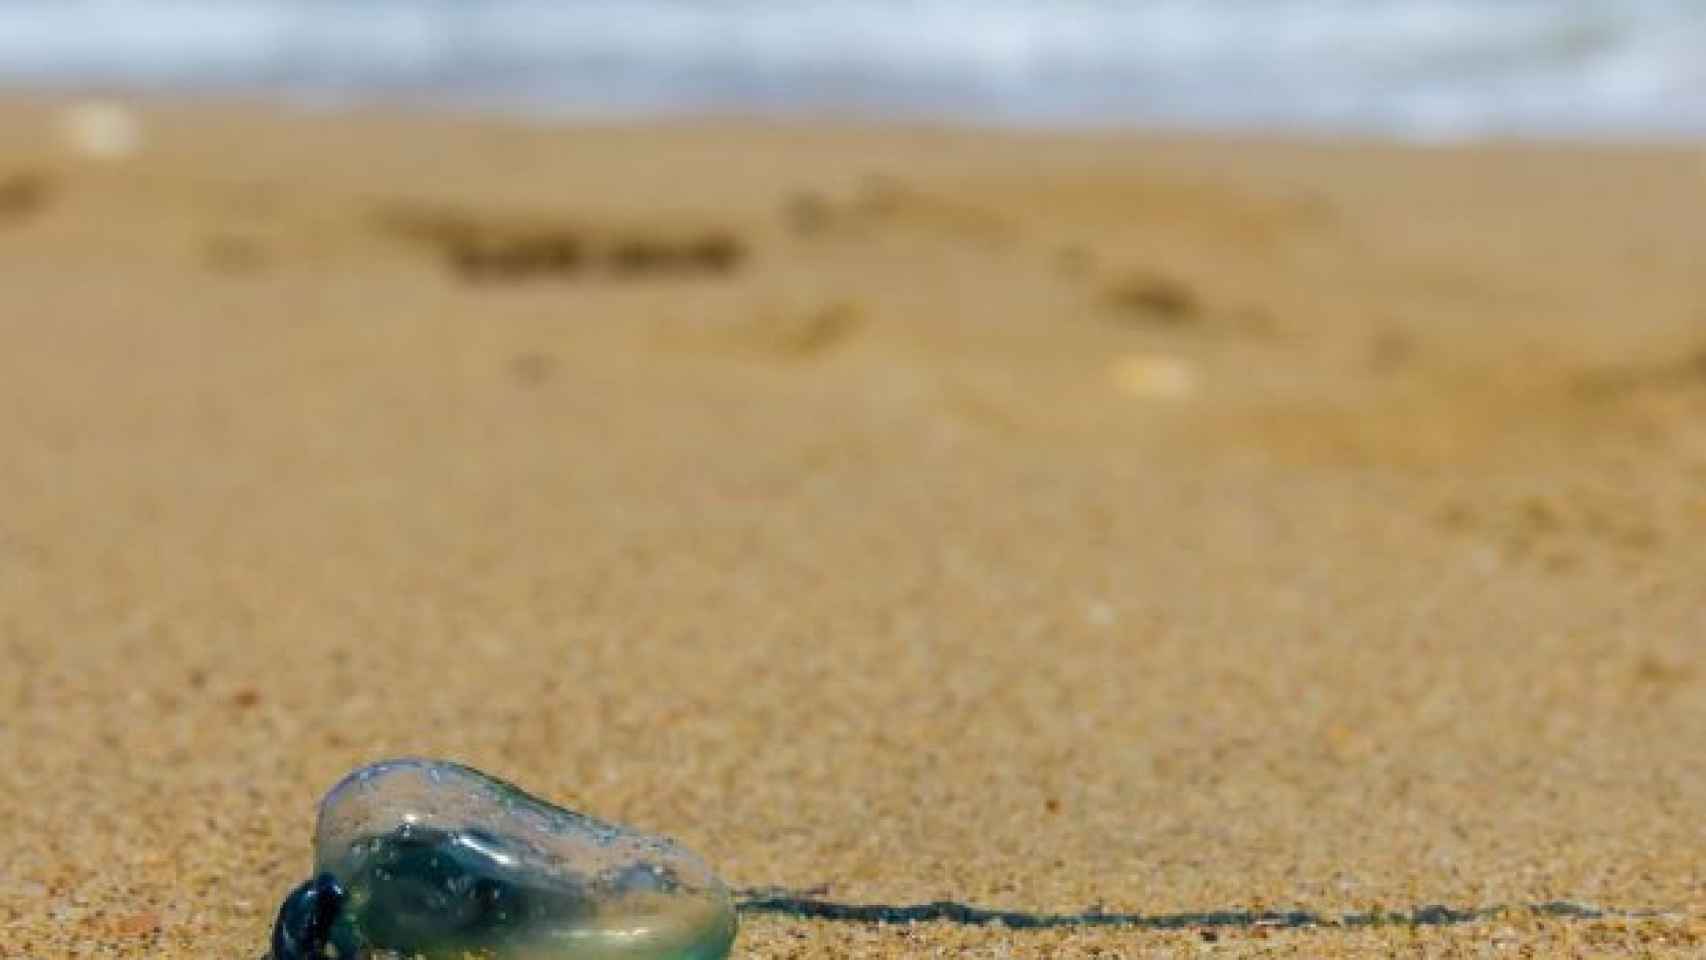 Estas son las playas españolas donde hay más medusas